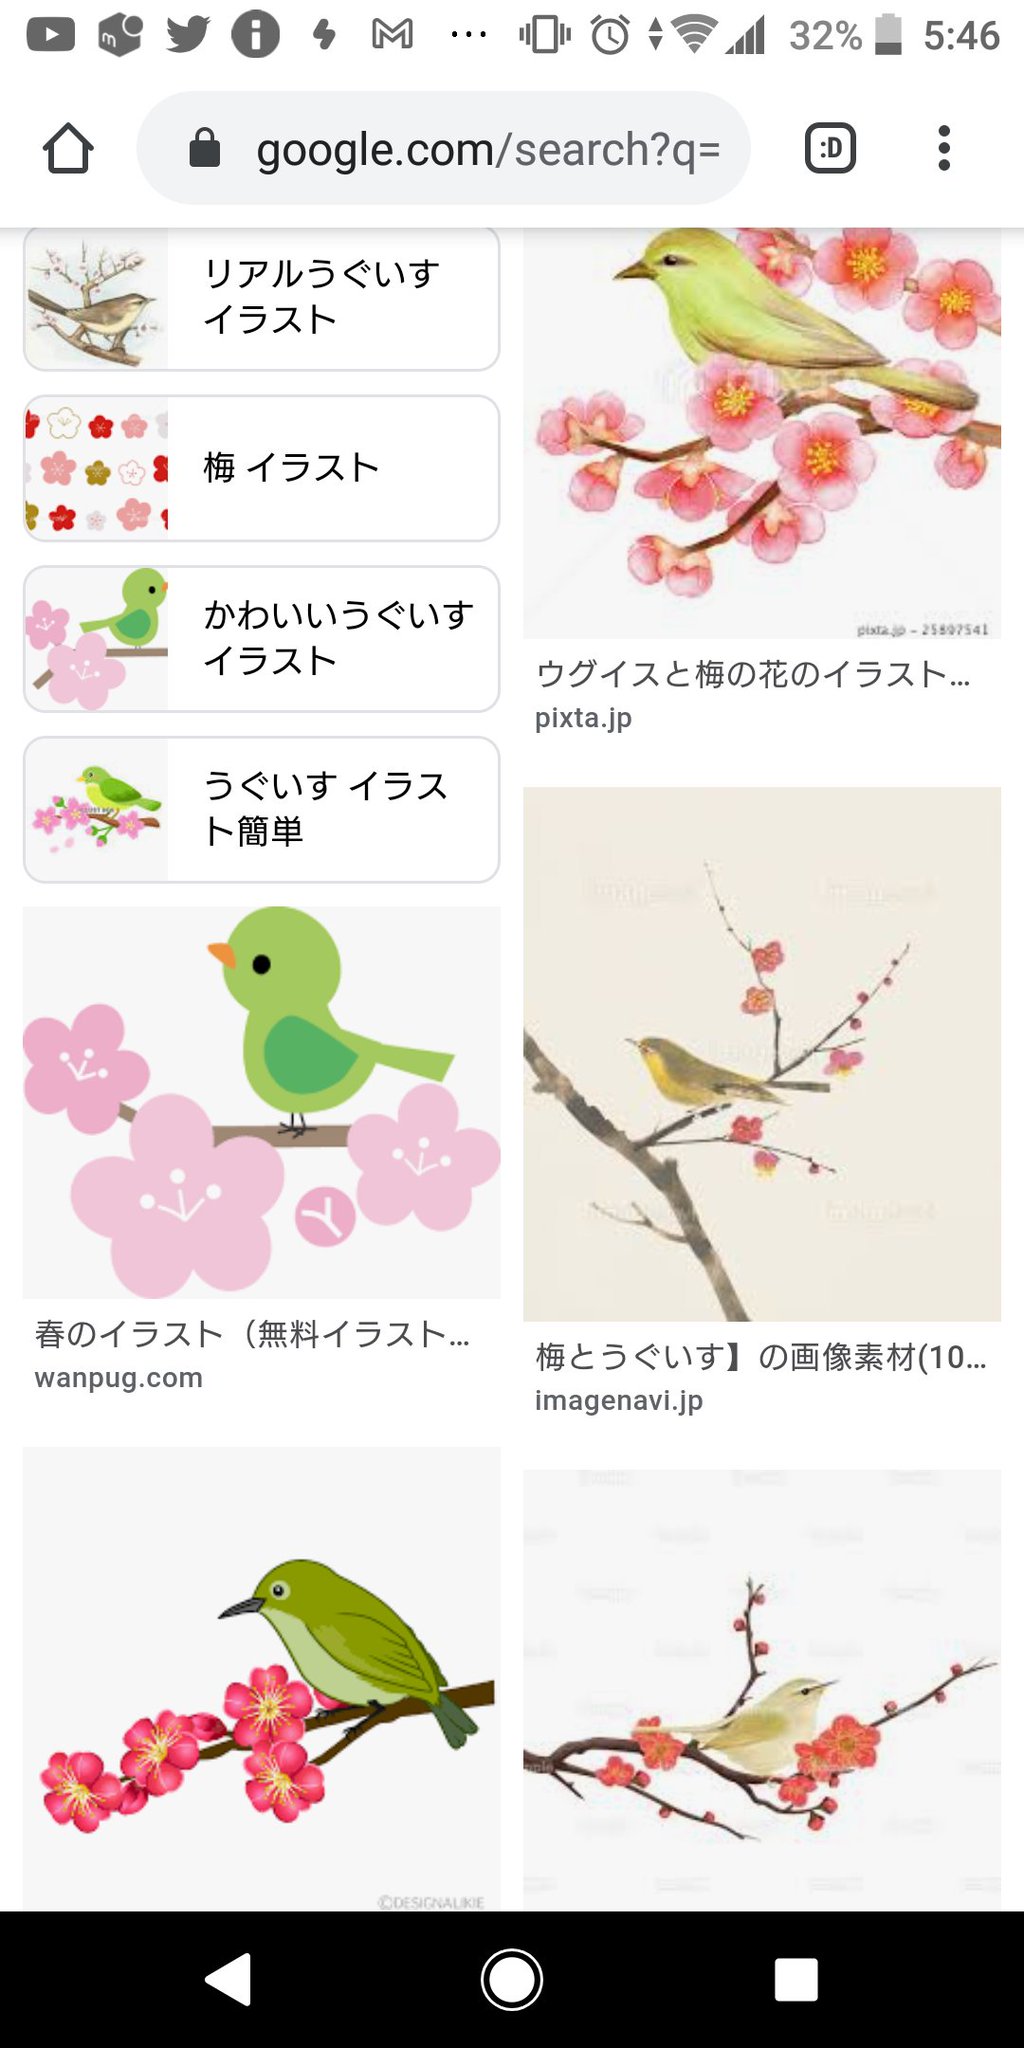 鴣鴣 こっぱみじんこ 梅にウグイス 緑色の鳥が止まっているぅ イラスト検索